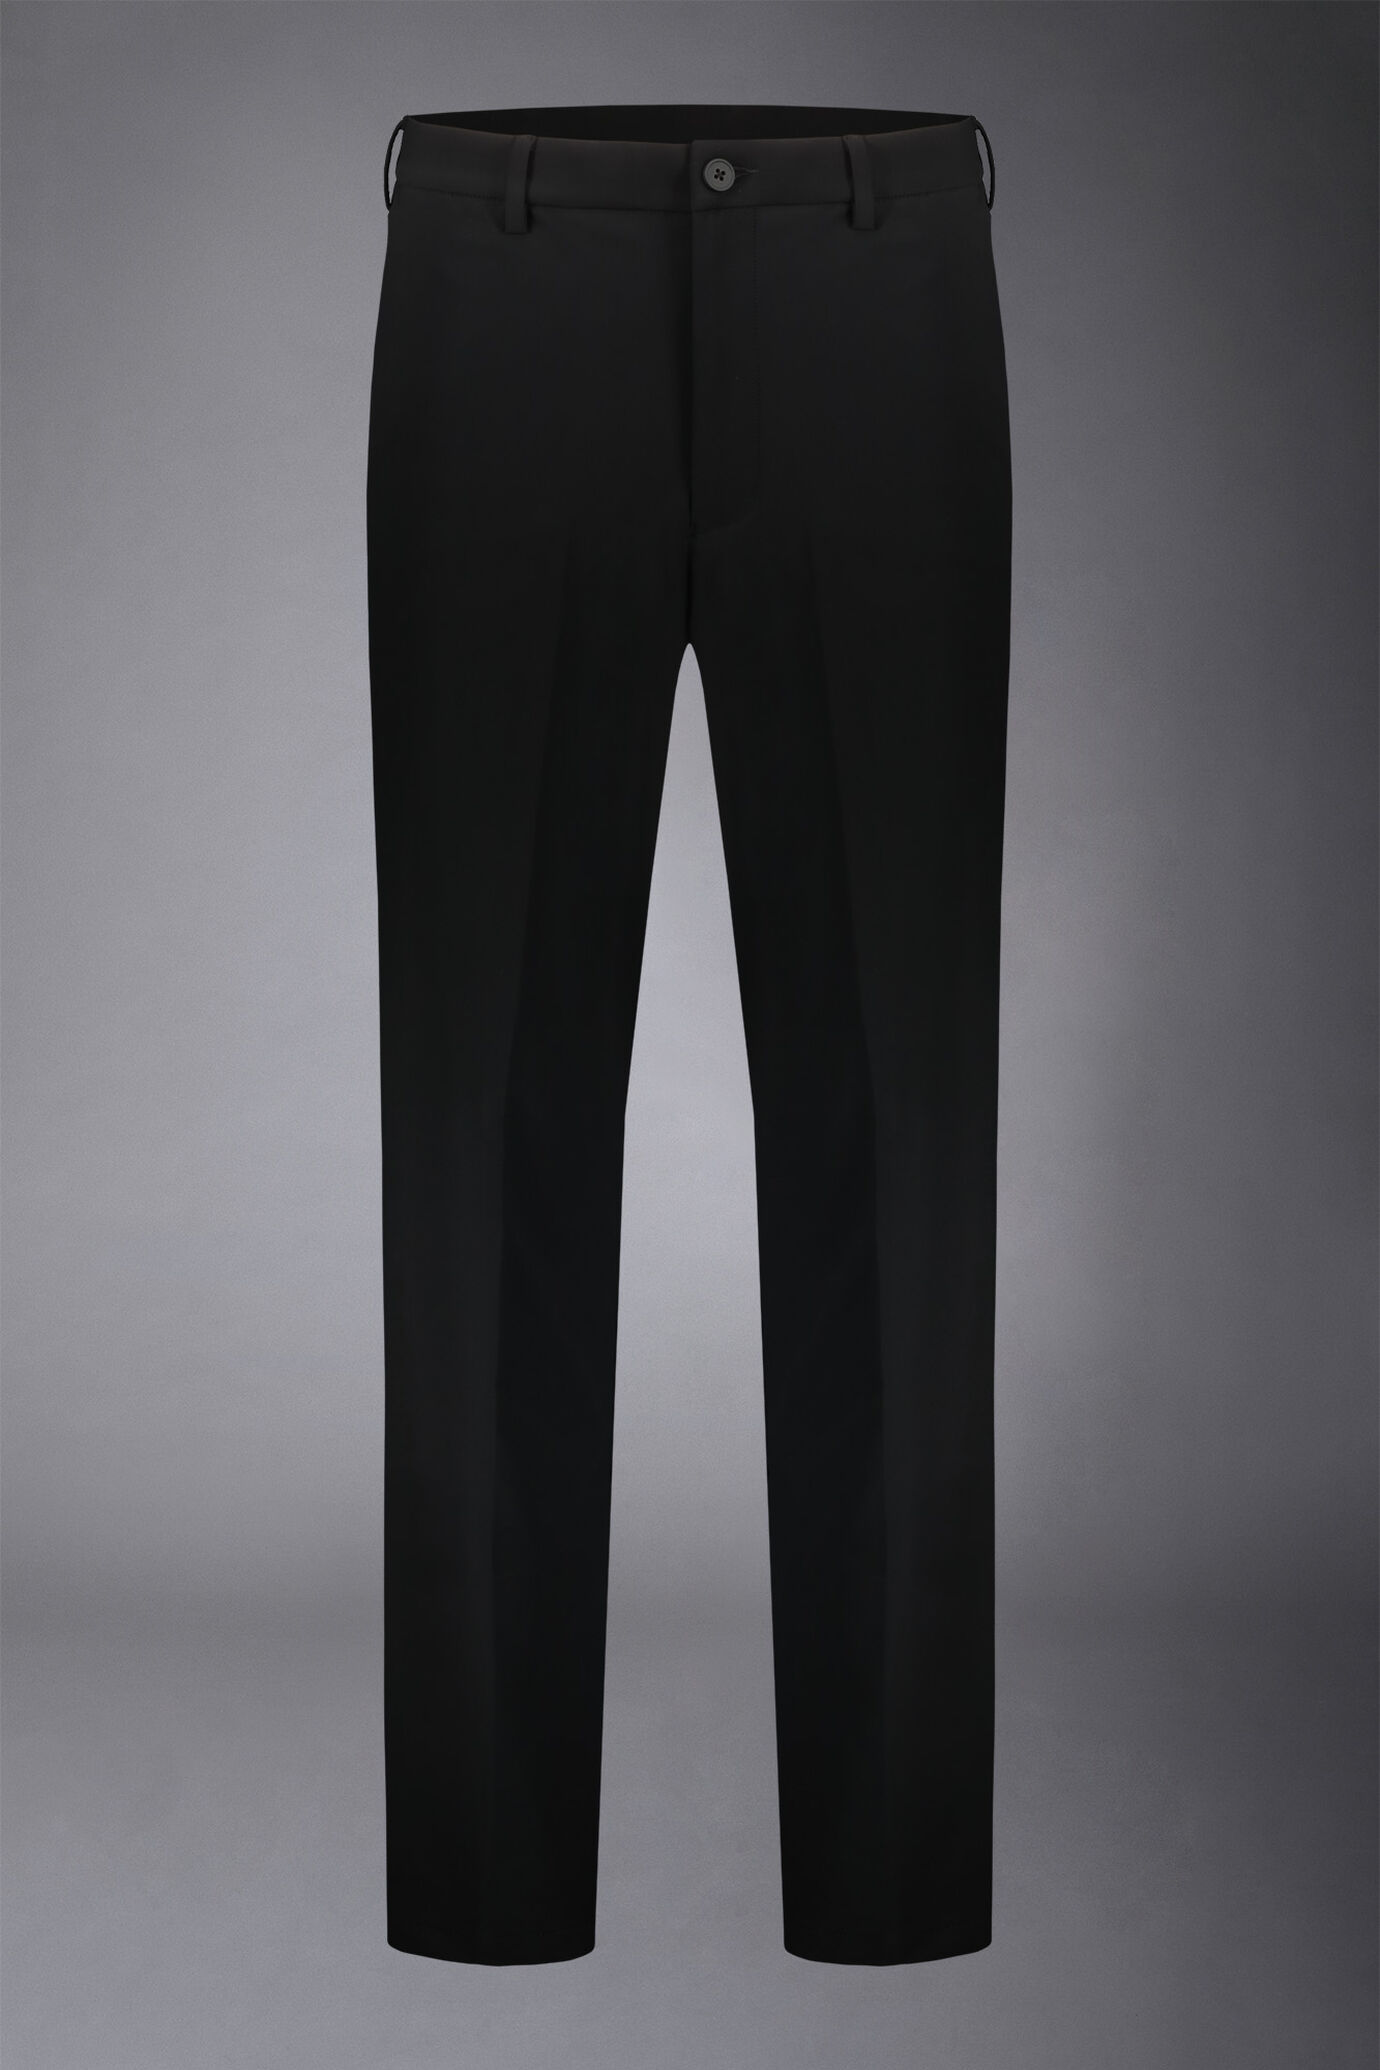 Pantalone chino uomo tessuto in nylon elasticizzato comfort fit image number 4